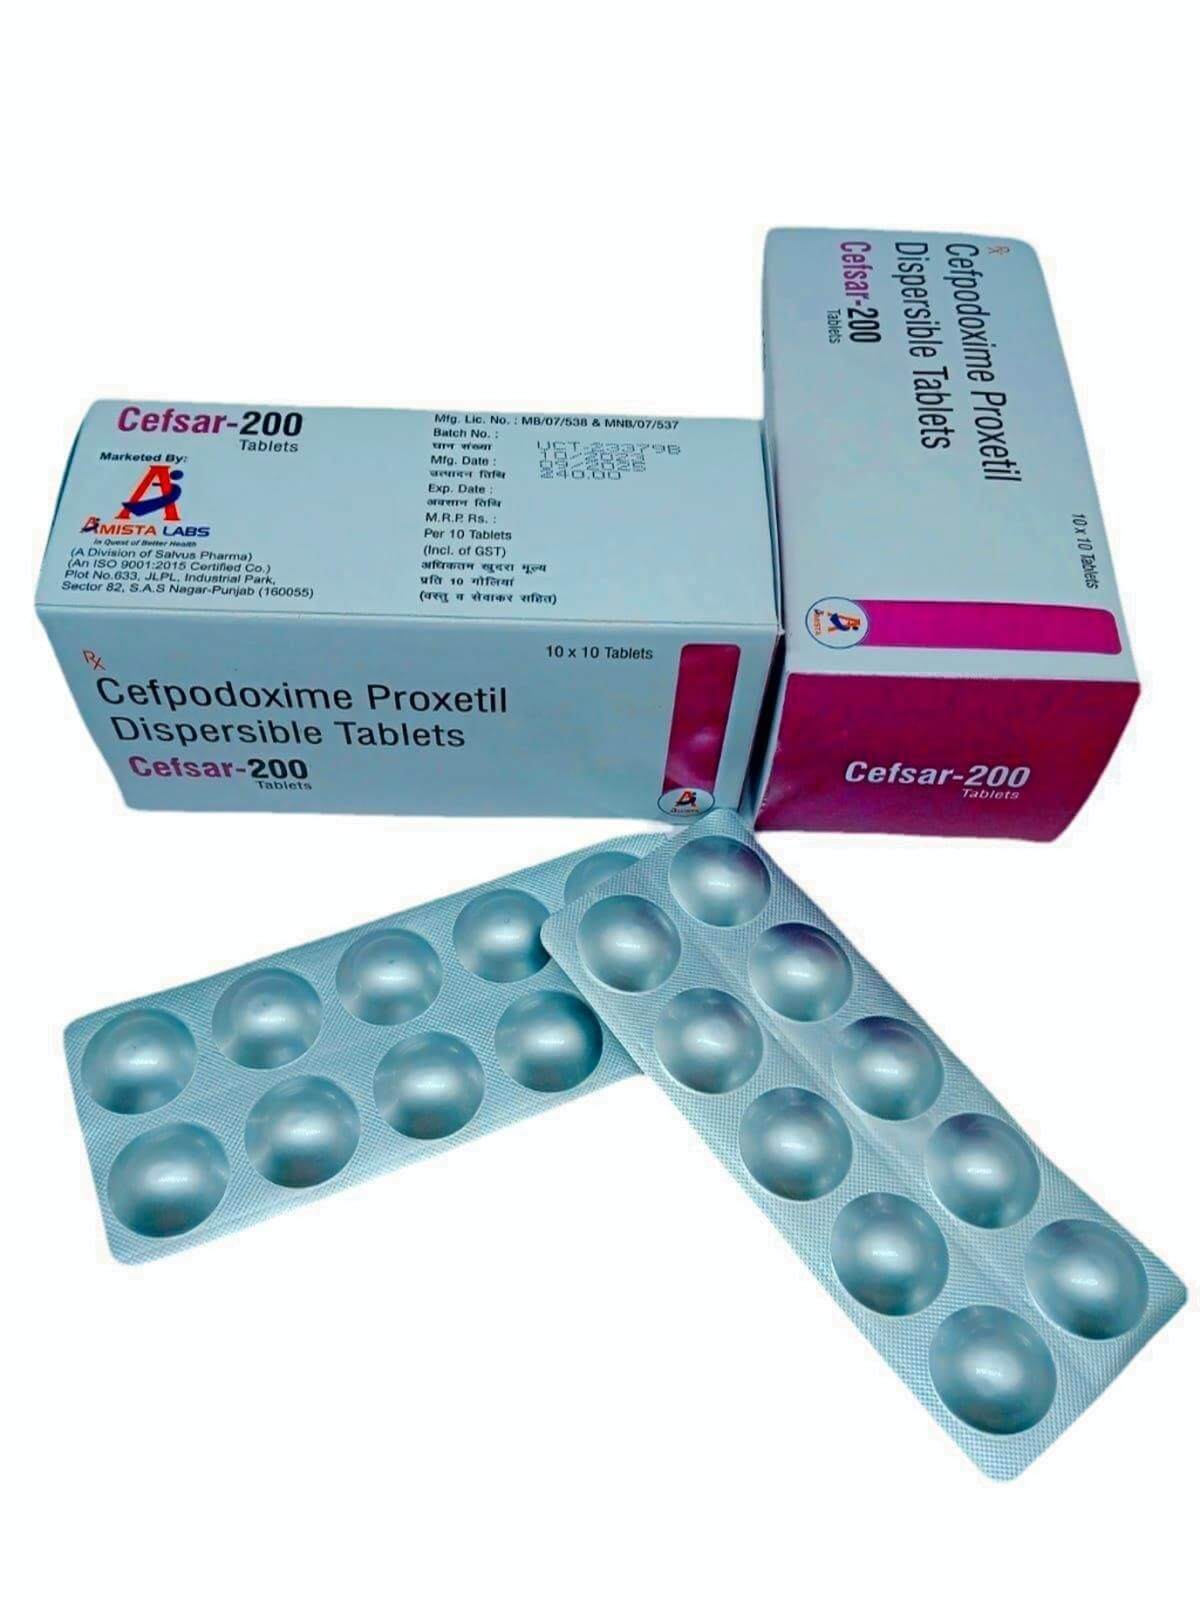 Cefsar-200 Tablets